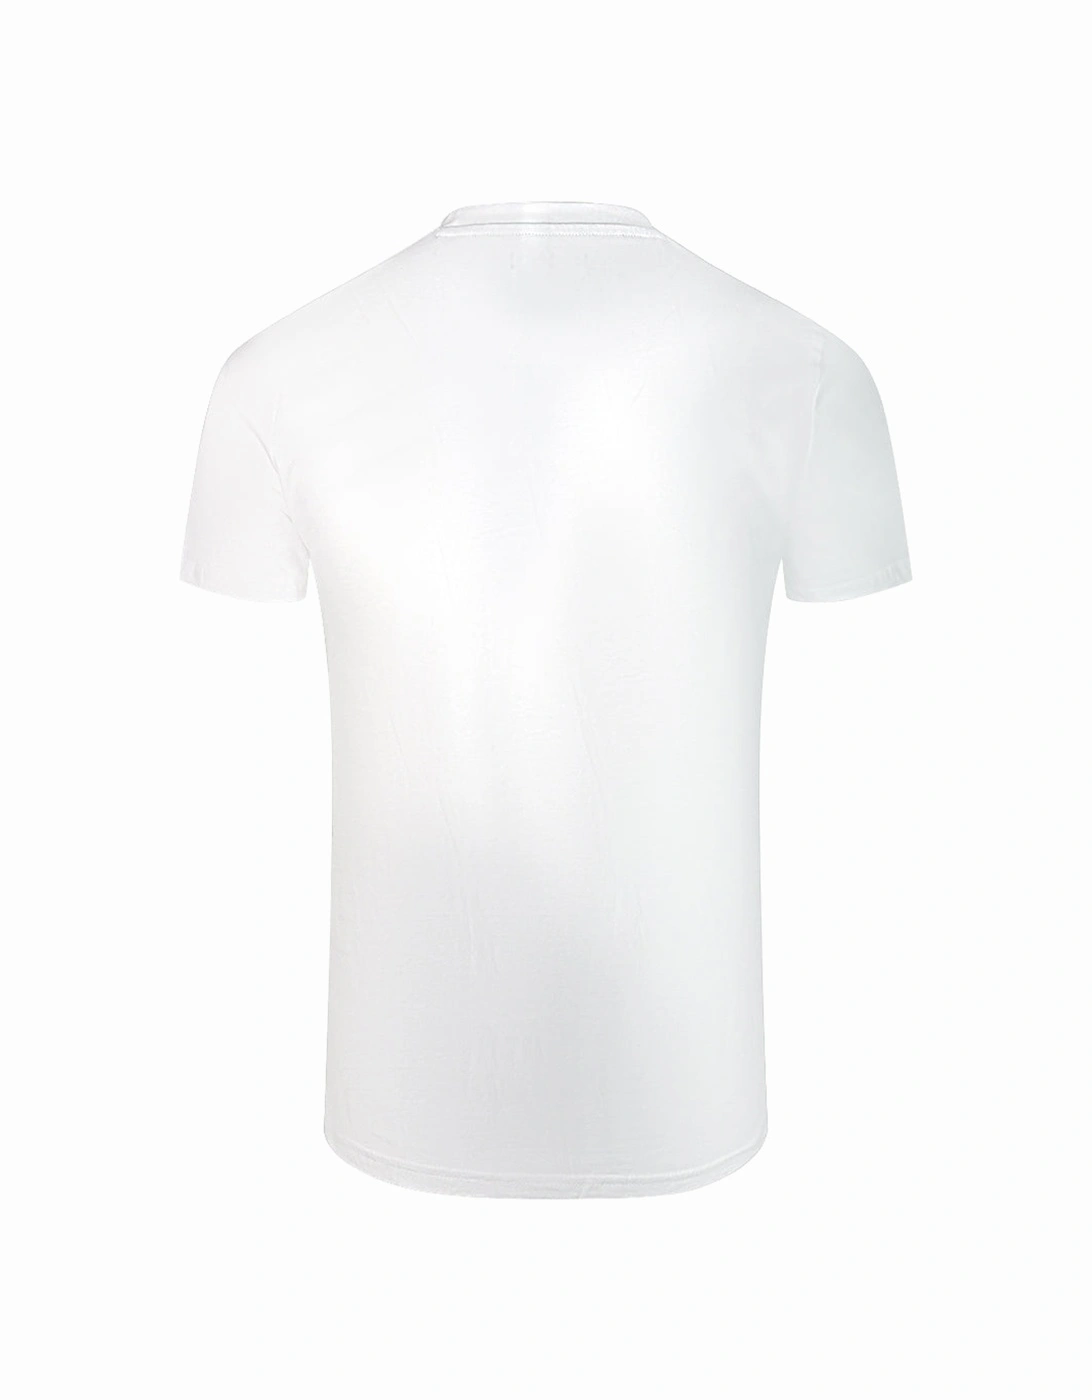 Cavalli Class Snake Skin Scribble Logo White T-Shirt